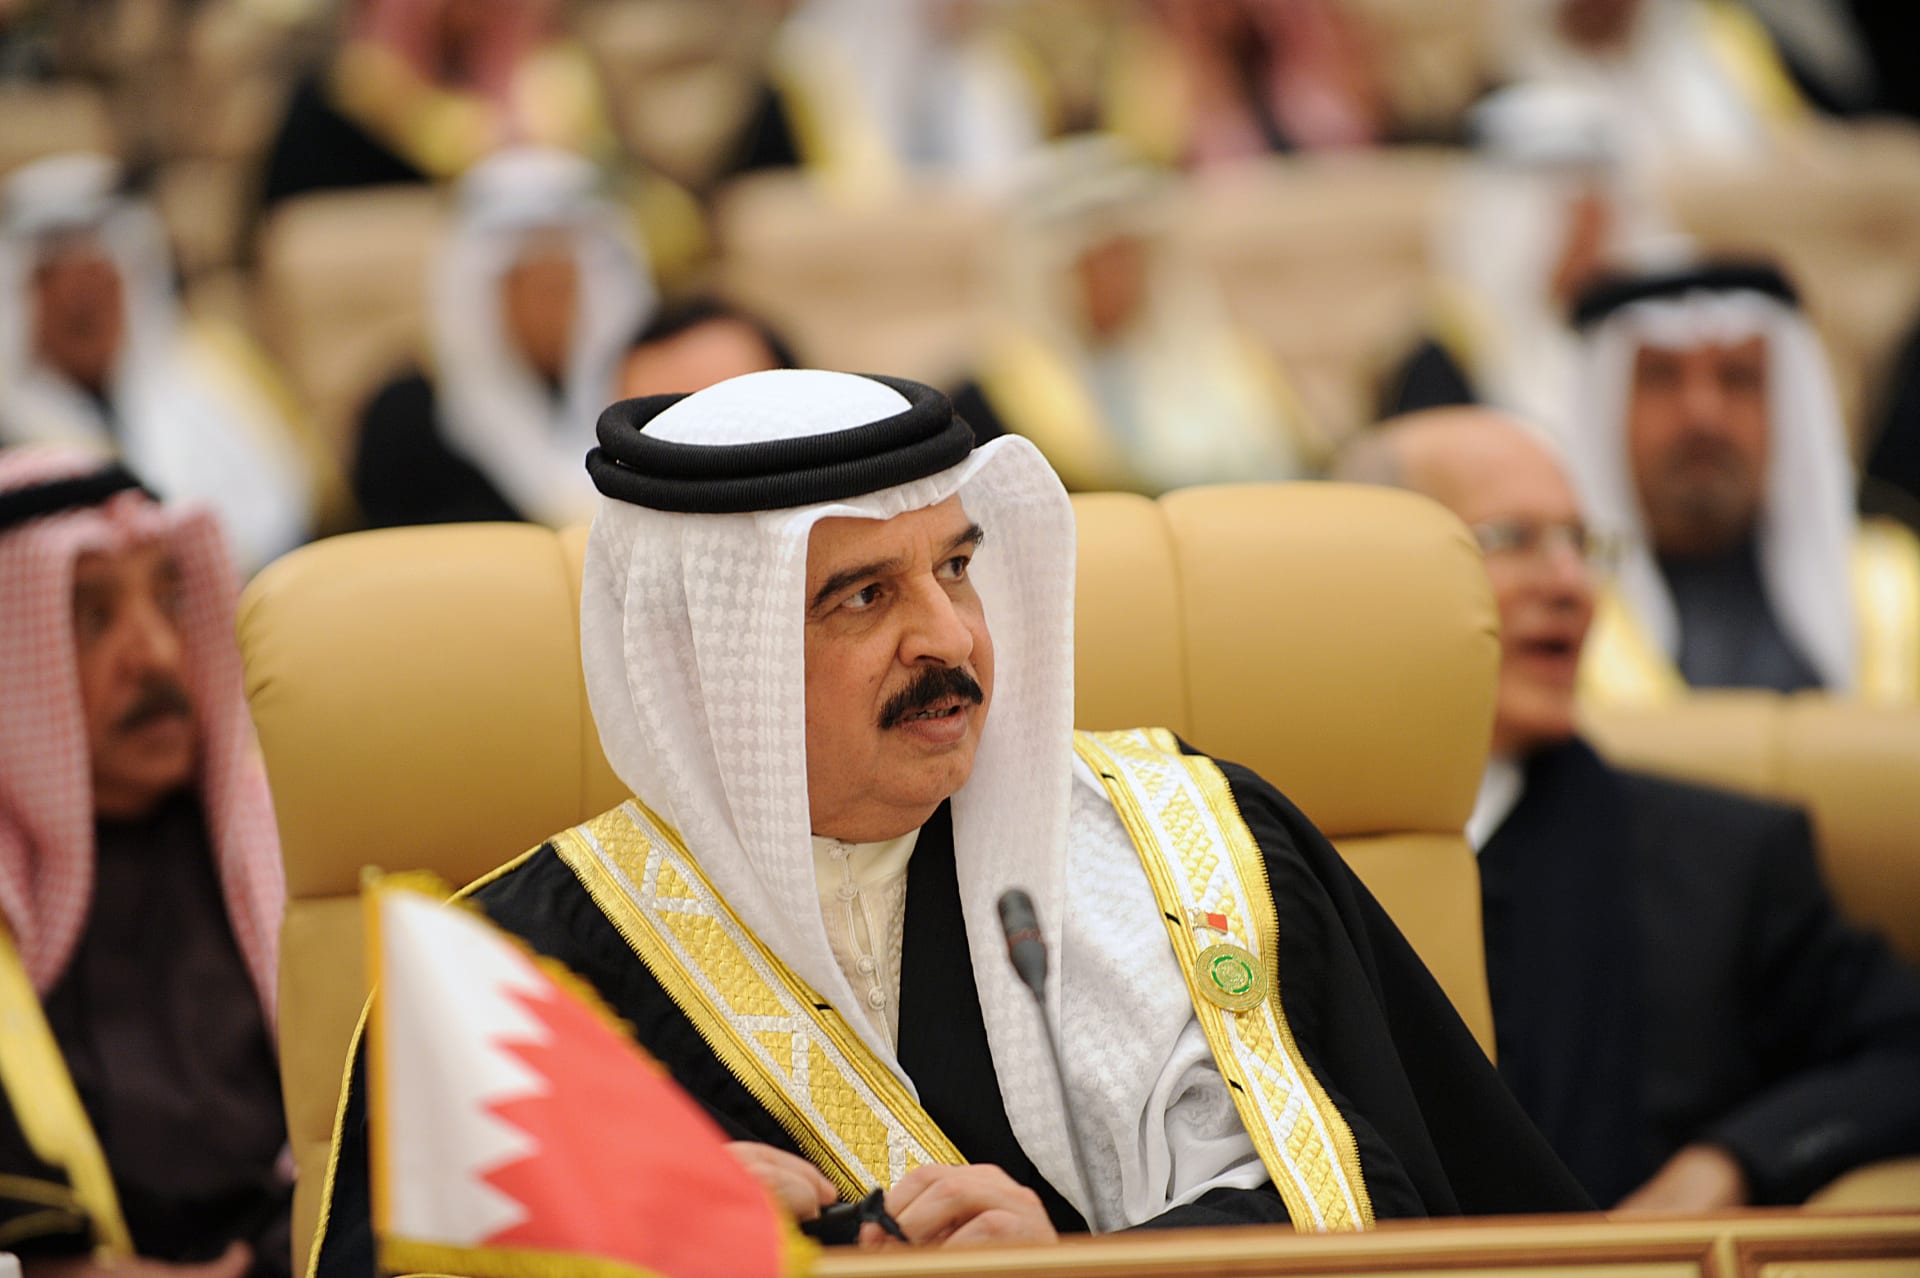 البحرين تعفي سلعًا وخدمات من ضريبة القيمة المضافة.. فما هي؟